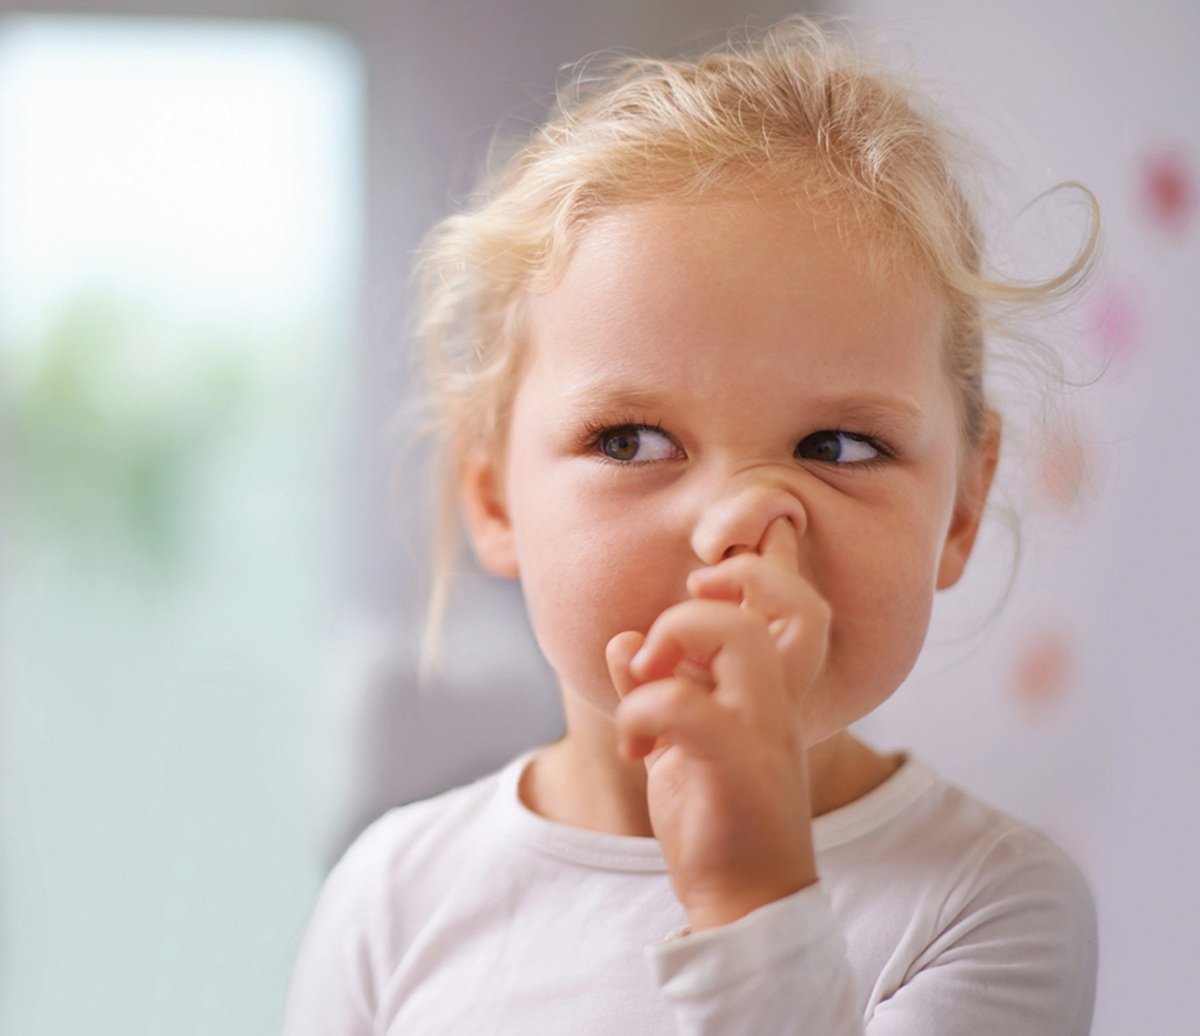 PERBUATAN mengorek hidung dalam kalangan kanak-kanak mampu mengundang risiko masalah kesihatan. - FOTO Google